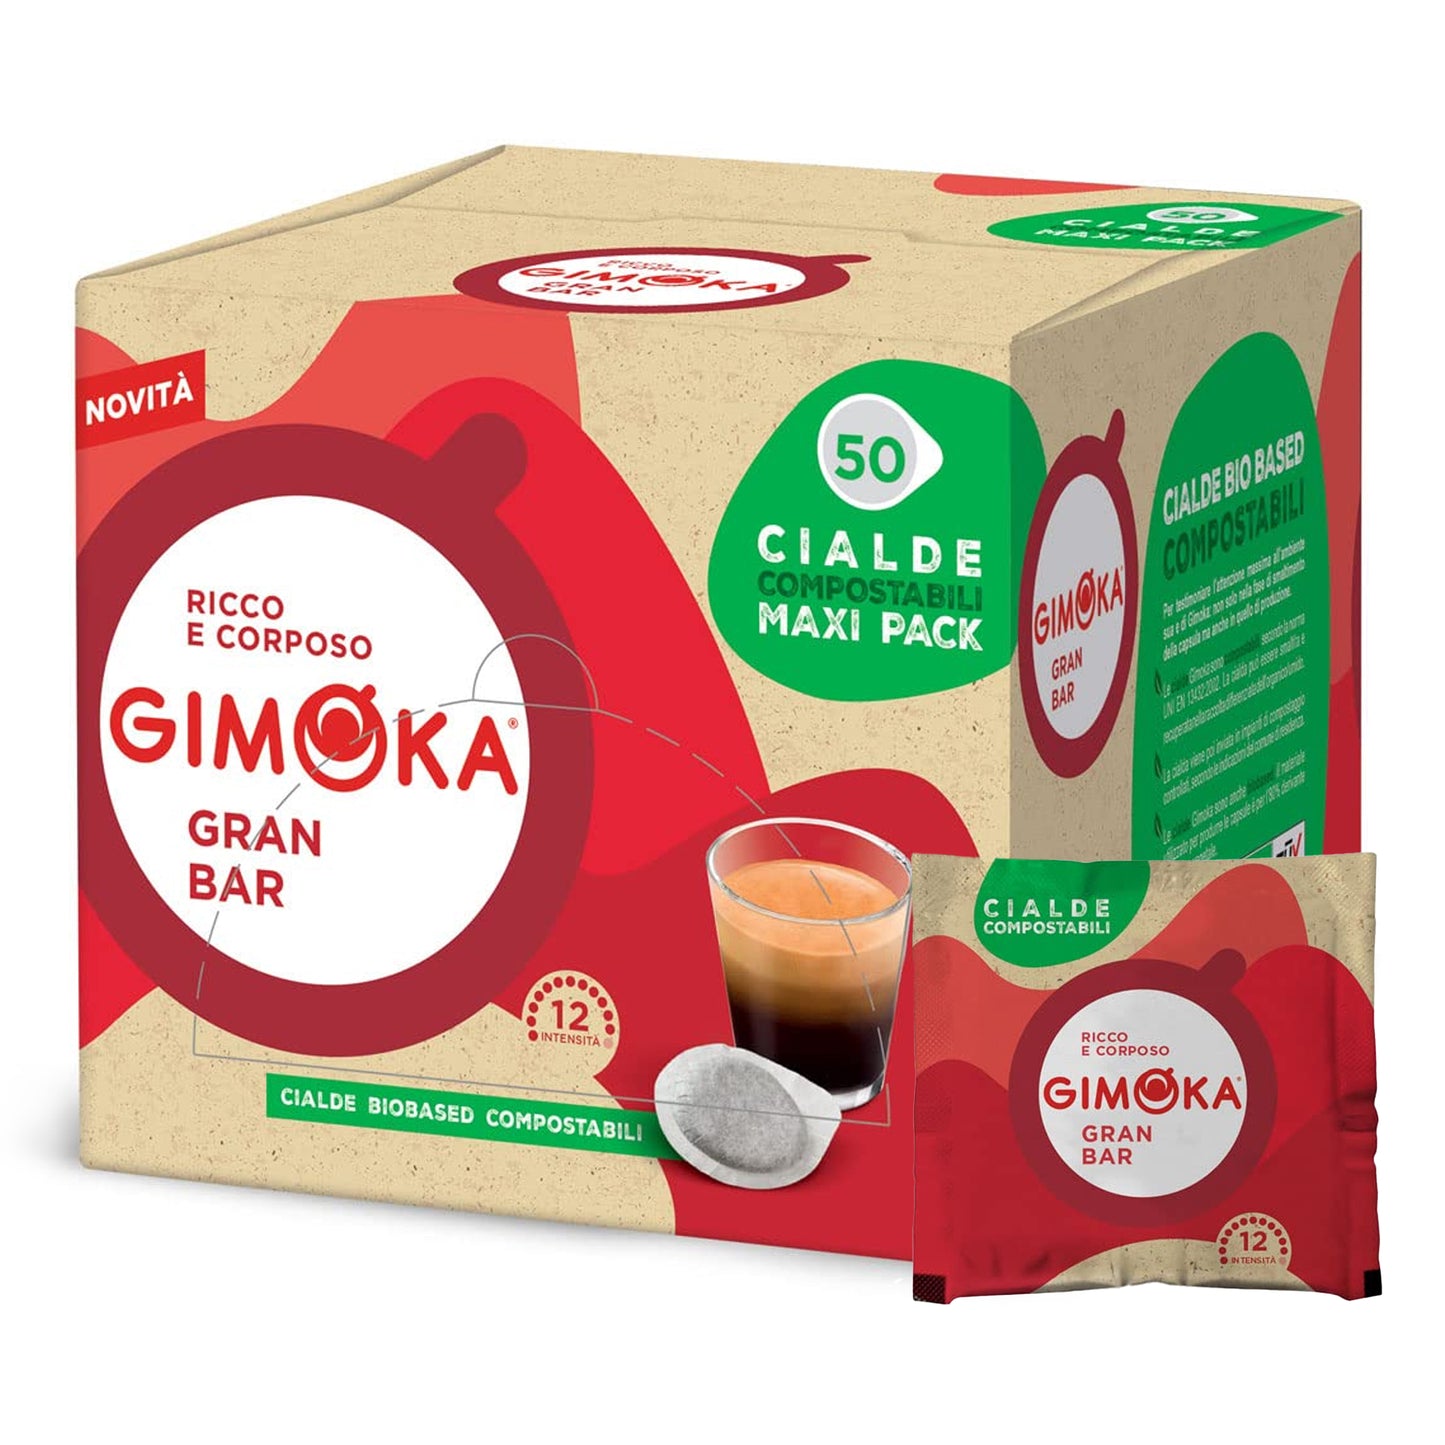 GIMOKA ESE Pods Grand Bar 50 Cialde Single Served Espresso Coffee Pods